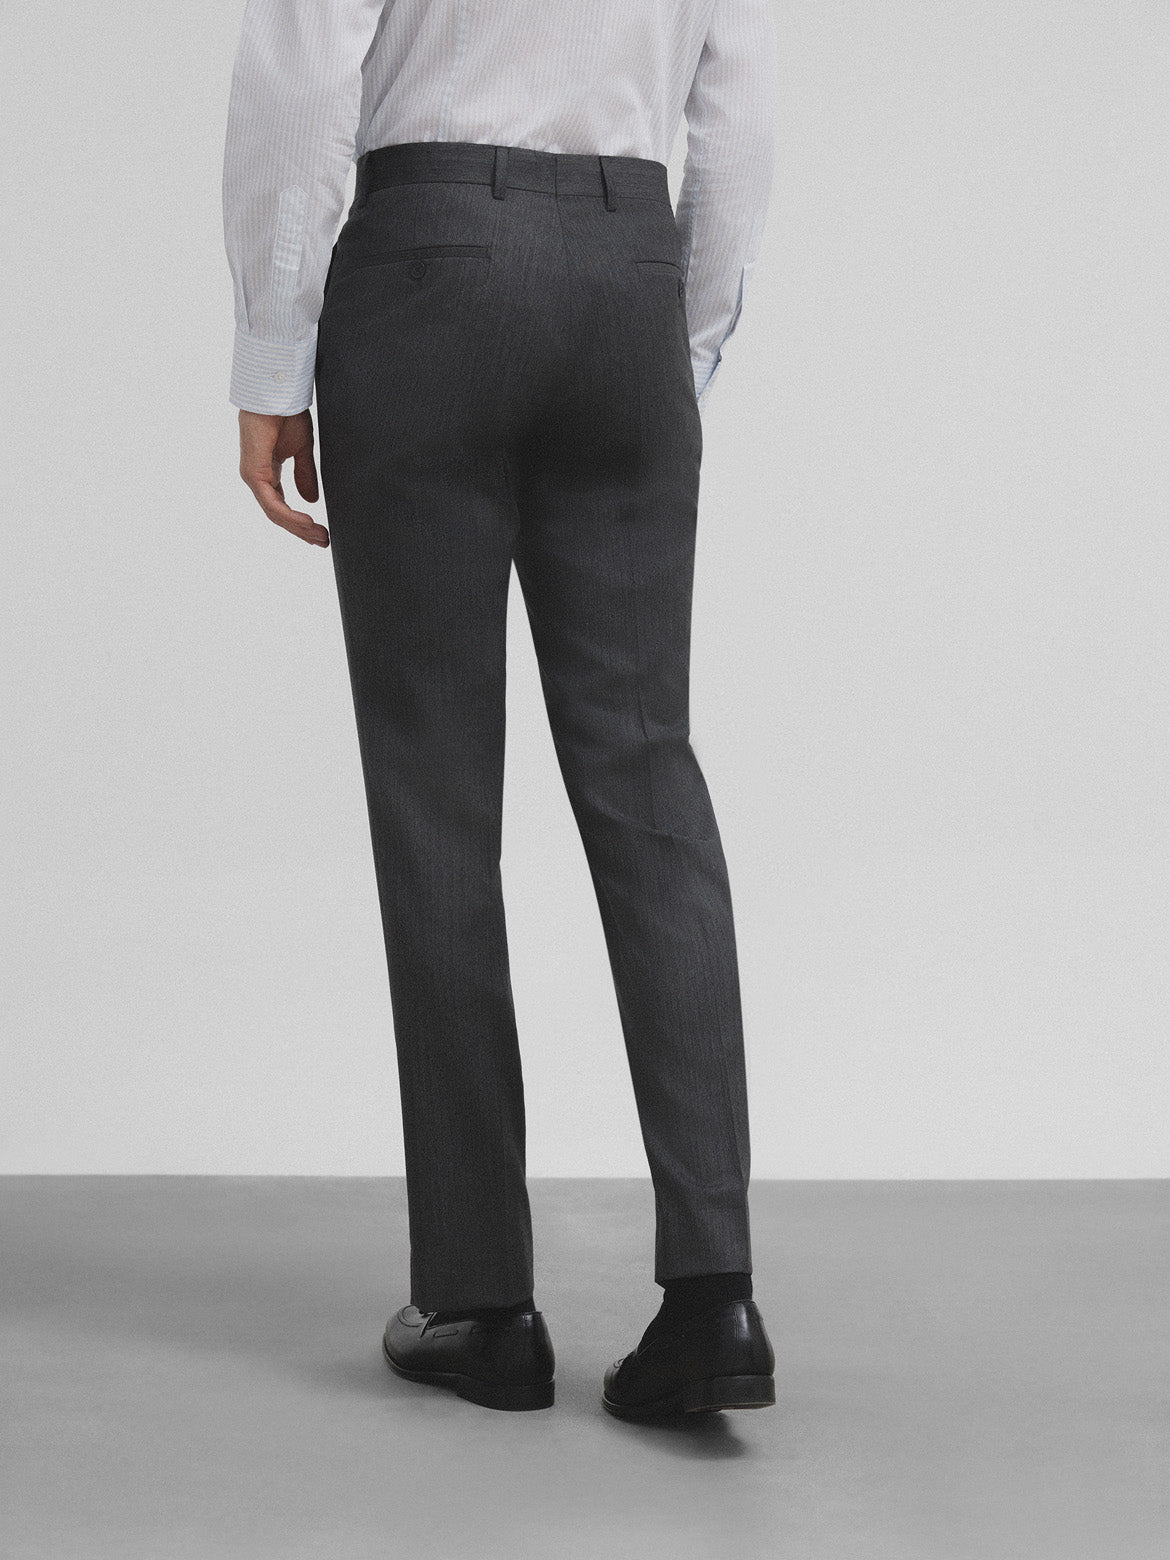 Pantalon traje cruzado stretch gris